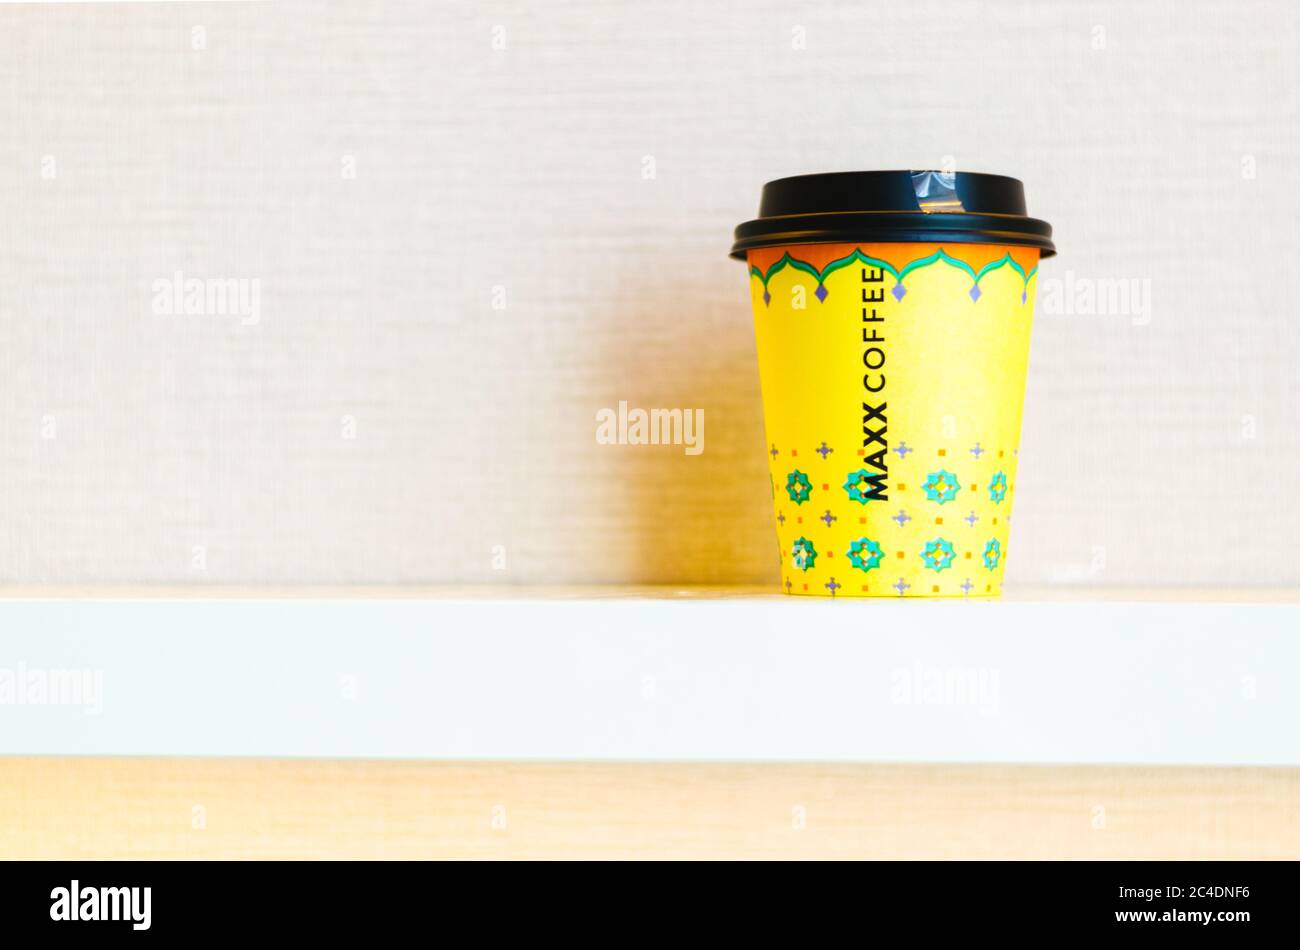 Eine gelbe Take Away Tasse Kaffee mit dem Namen der Maxx Coffee Kette in der Mitte der Tasse. Stockfoto